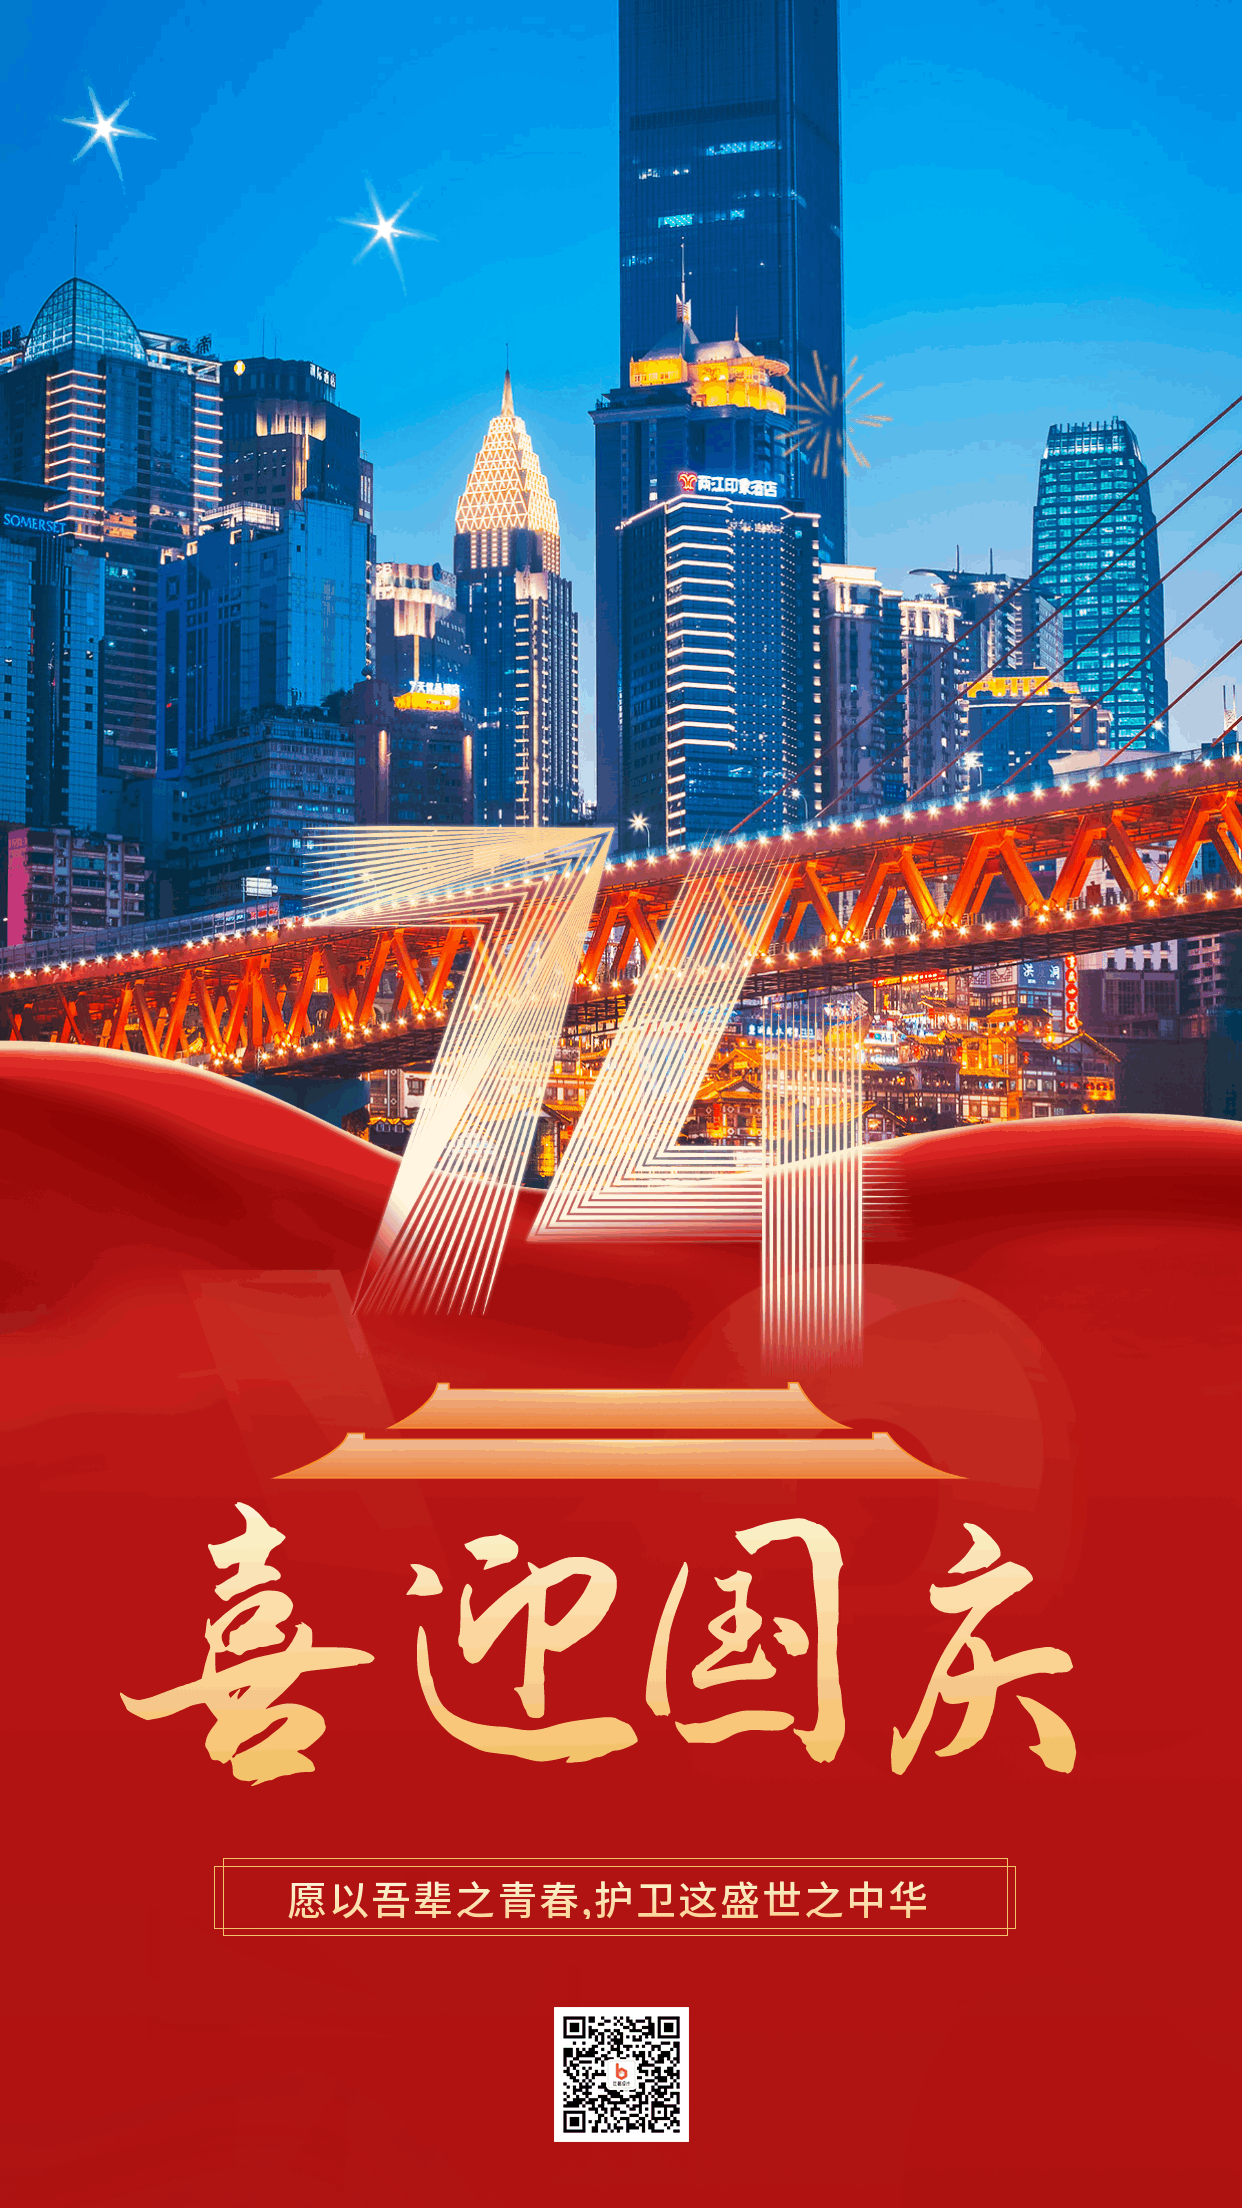 简约大气实景国庆节74周年祝福动态手机海报